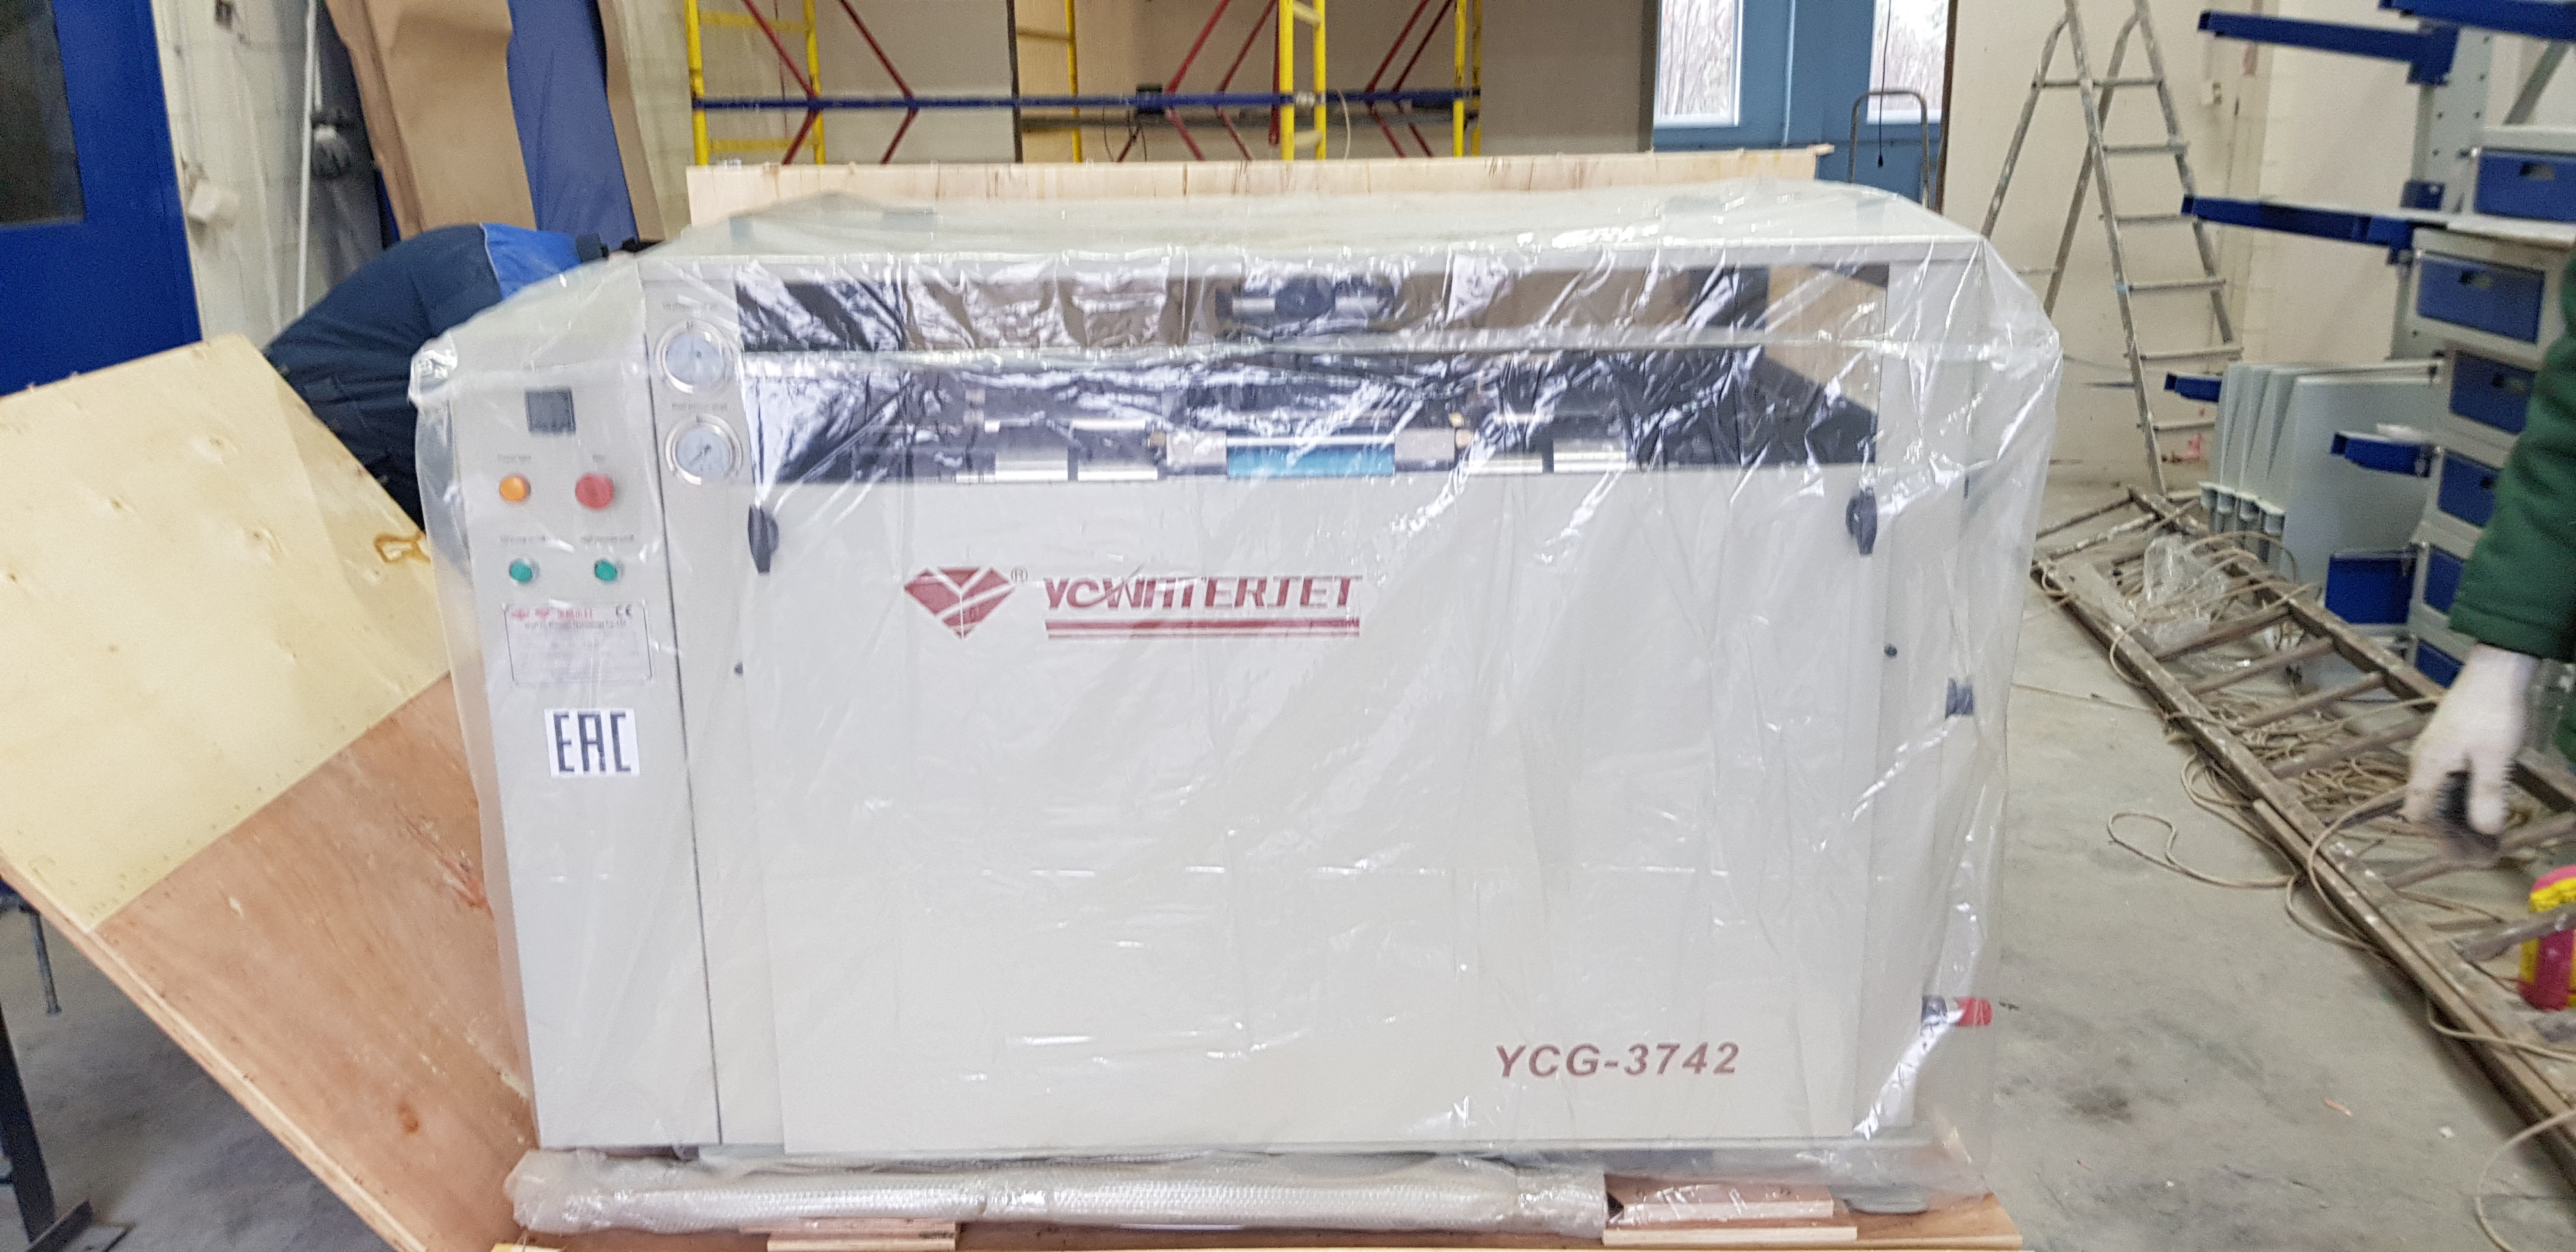 20181109 103808 - Гидроабразивный станок с ЧПУ YC Waterjet